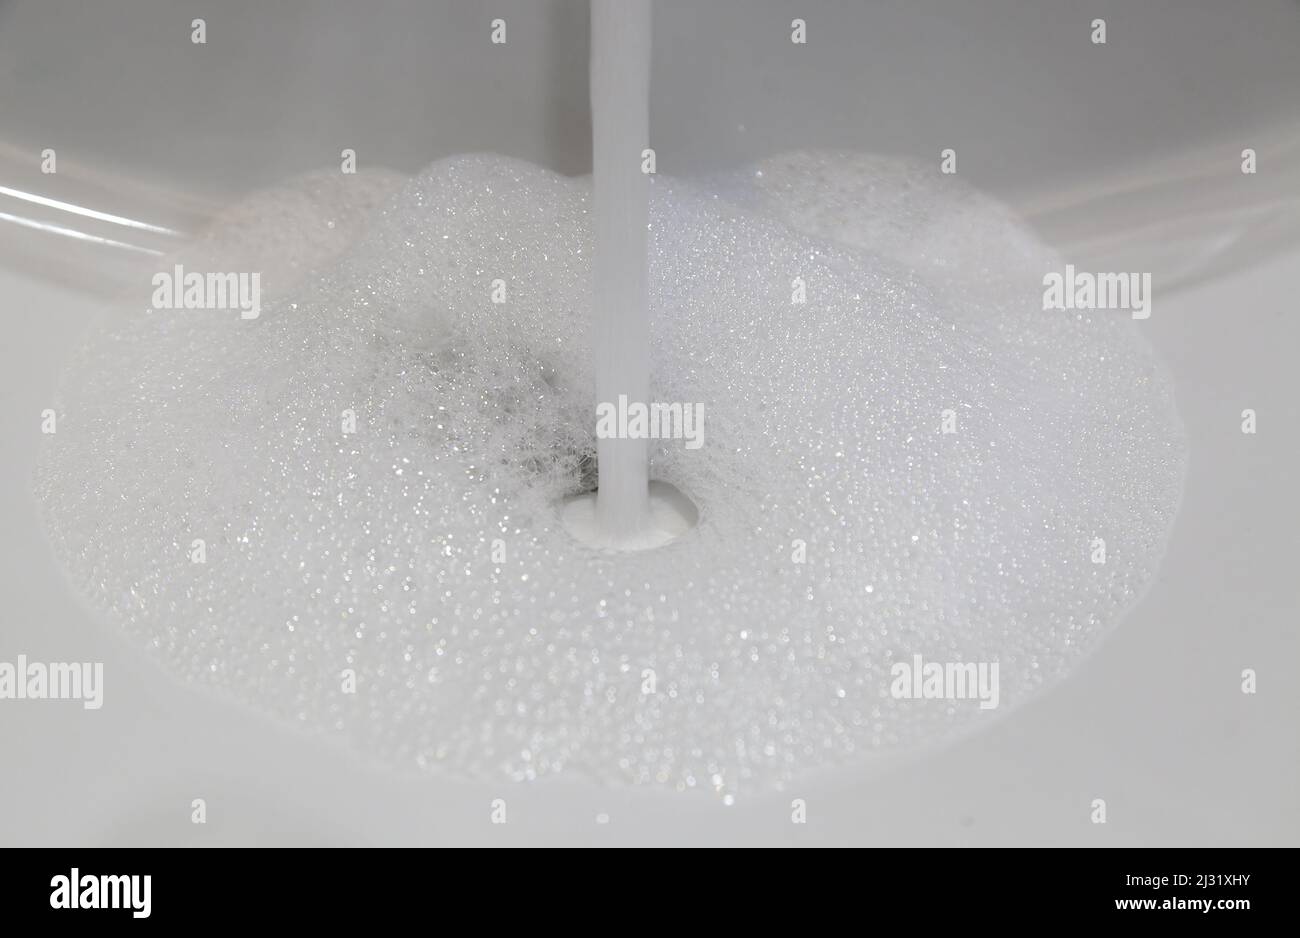 Particolare di acqua con schiuma per la pulizia e l'igiene Foto Stock